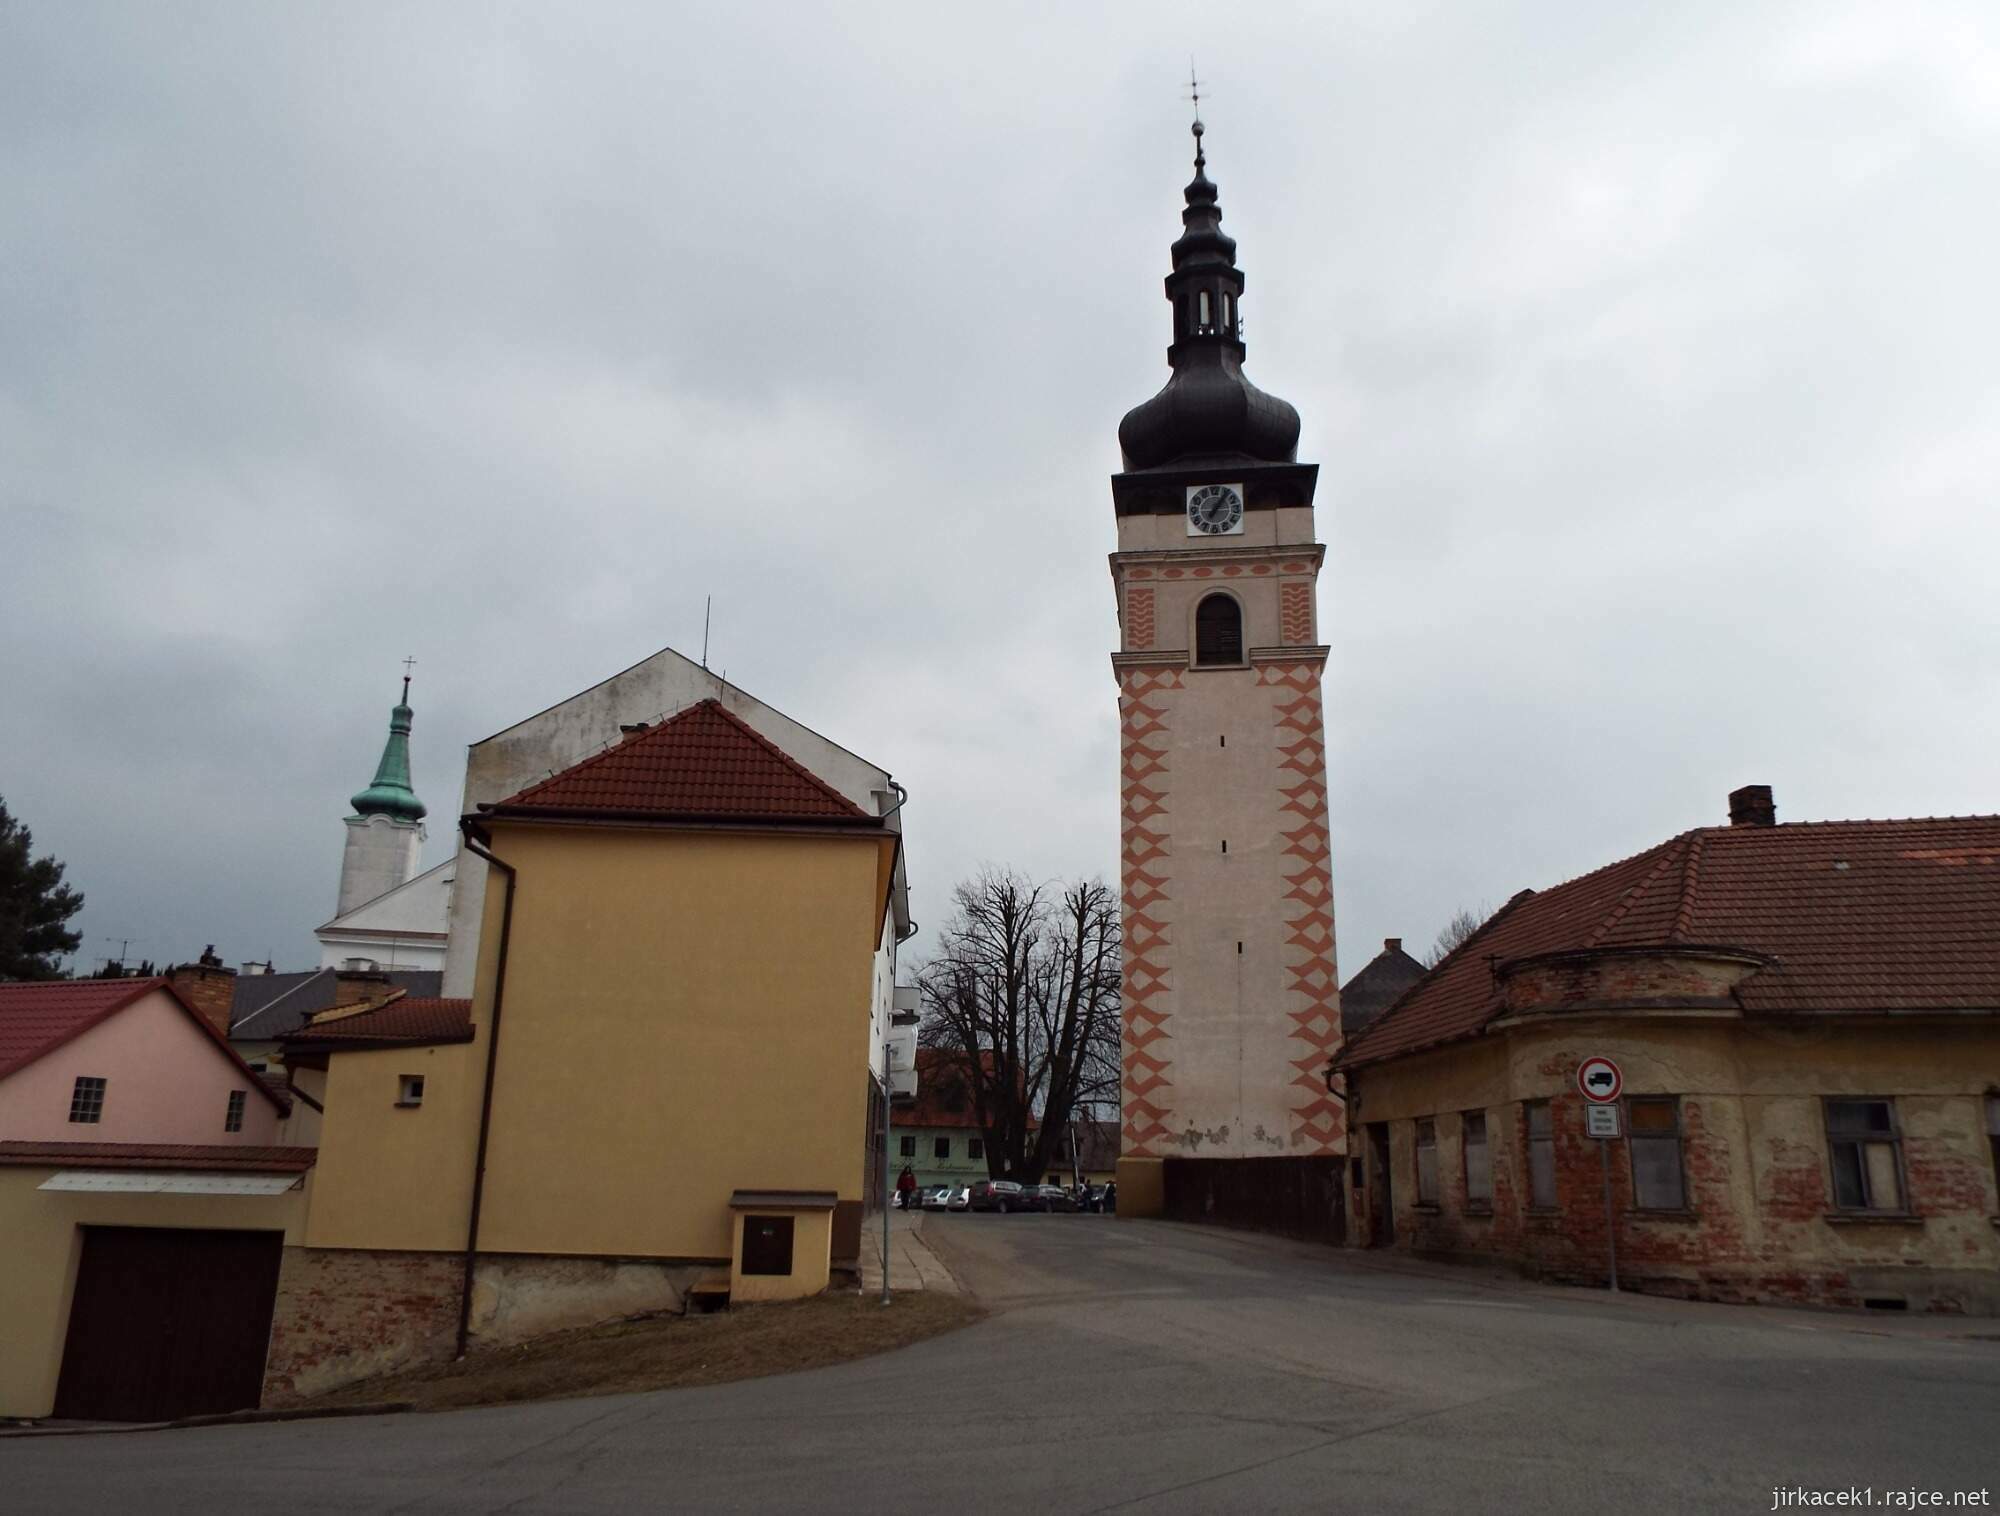 07 - Jevíčko - Městská věž a hradby 11